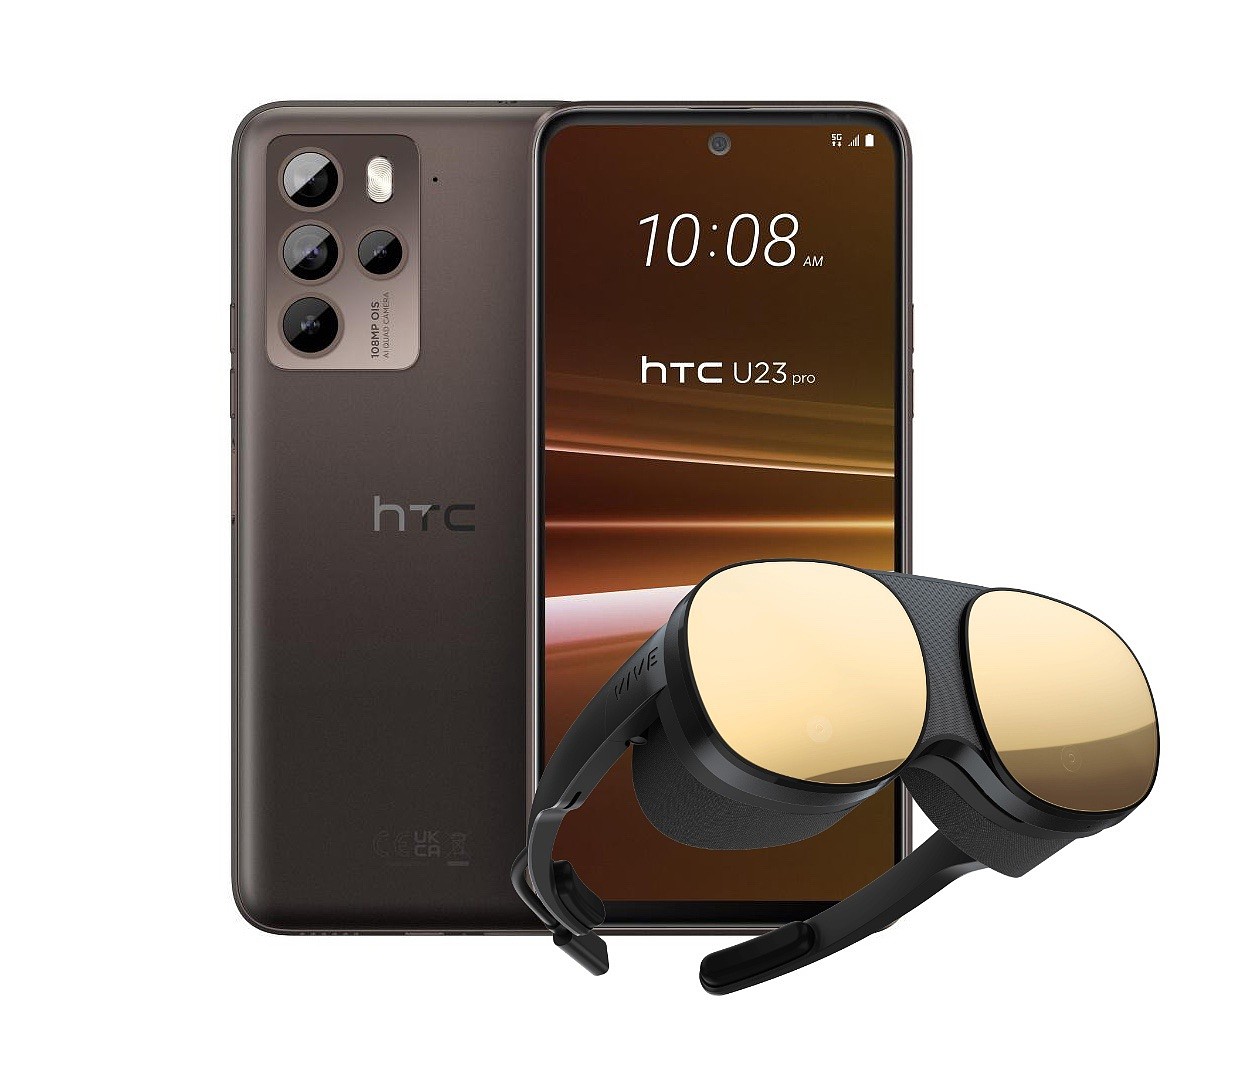 HTC 推出 U23 pro 手机 VIVE Flow 版：骁龙 7 Gen 1、附带 VR 头显，售 18900 新台币 - 1